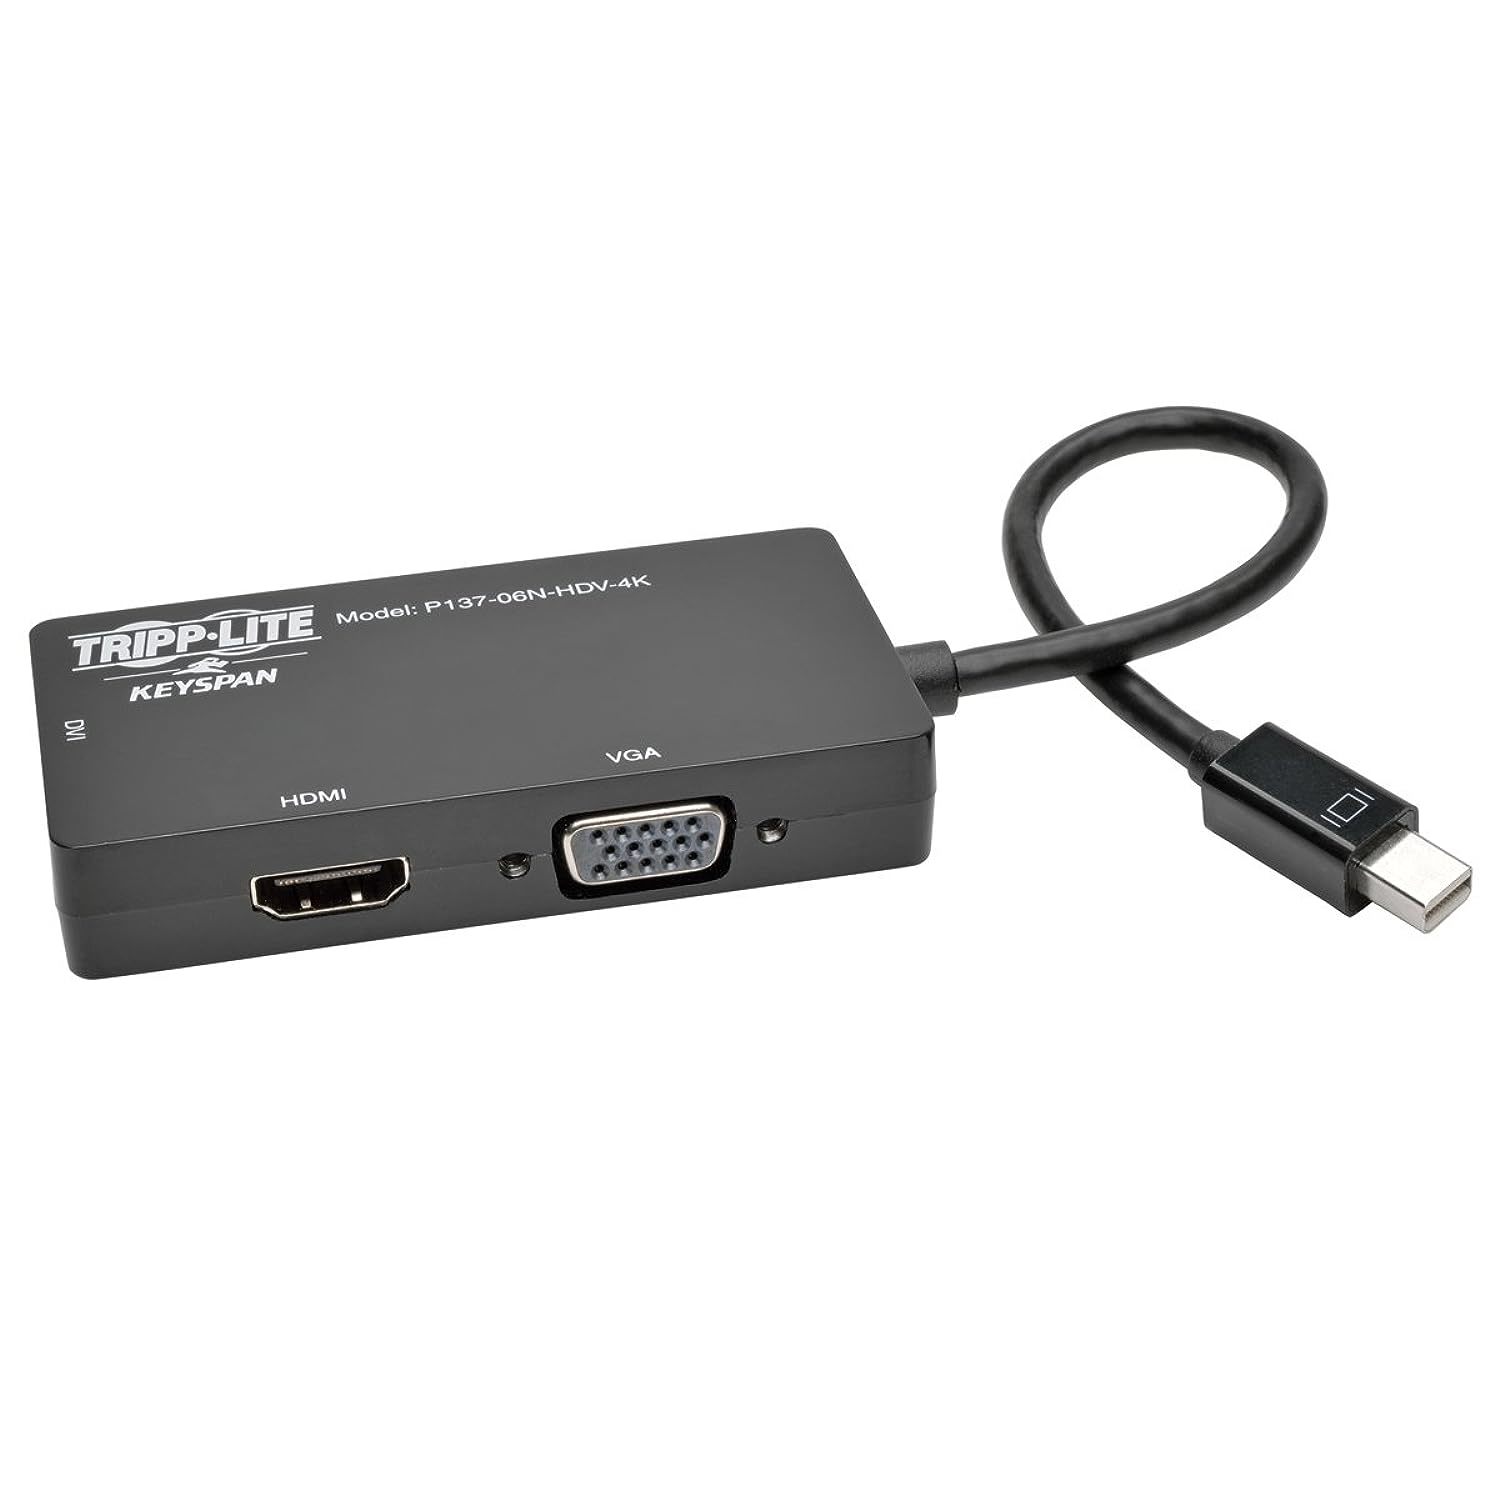 Tripp Lite Keyspan Mini DisplayPort to VGA/DVI/HDMI, All-in-One DP 1.2 Converter - $55.09